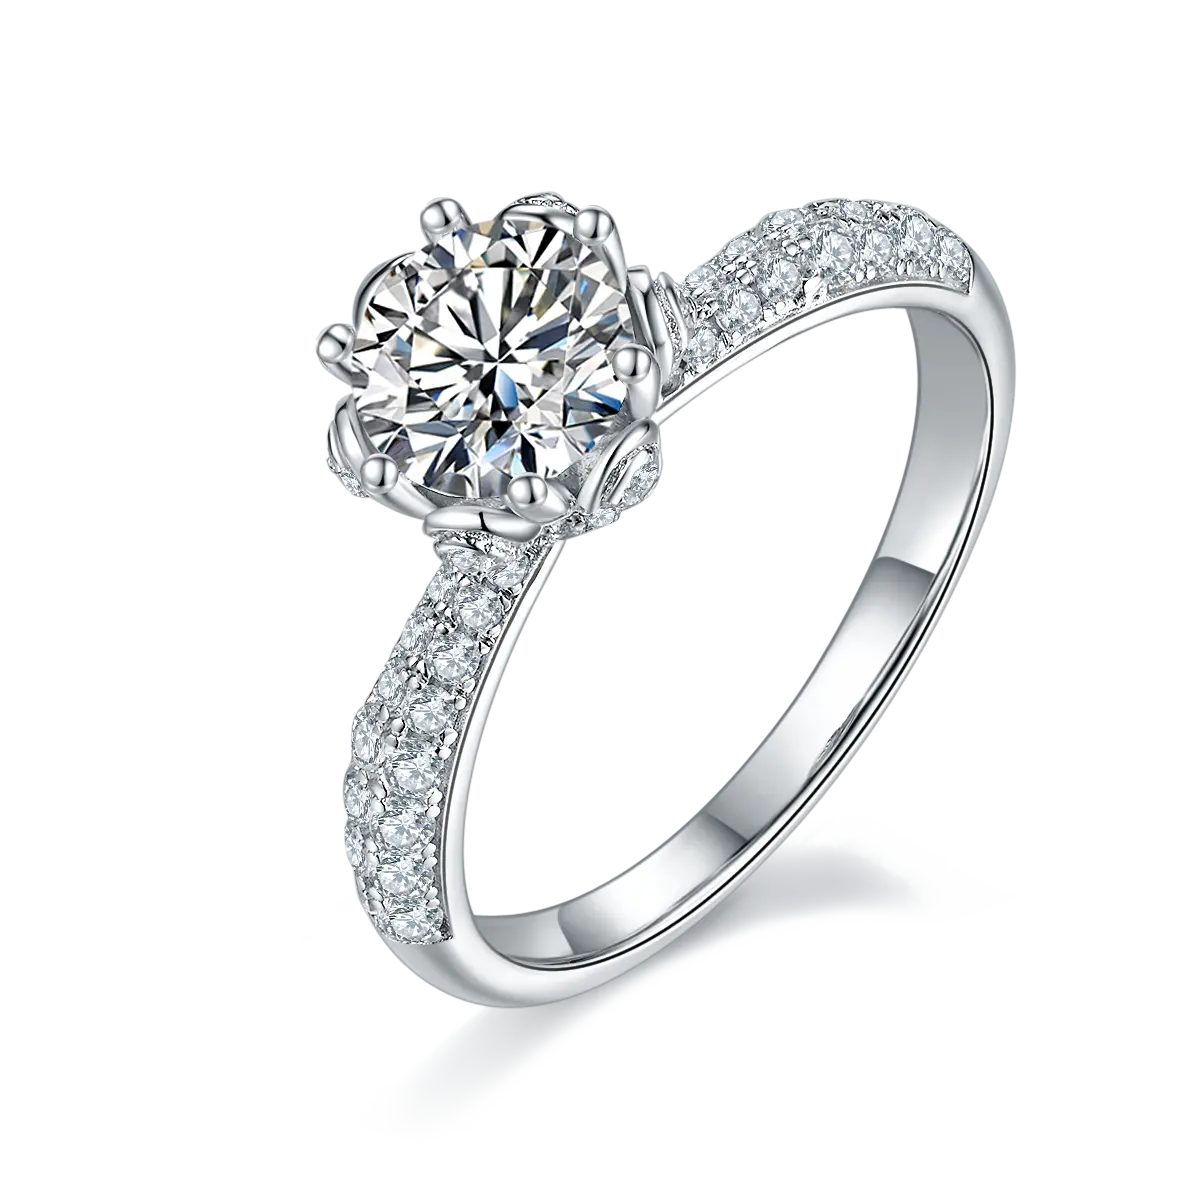 Wholesale Women Diamond Rings For Engagement Sterling Silver 925 D VVS 1ct Moissanite Ring